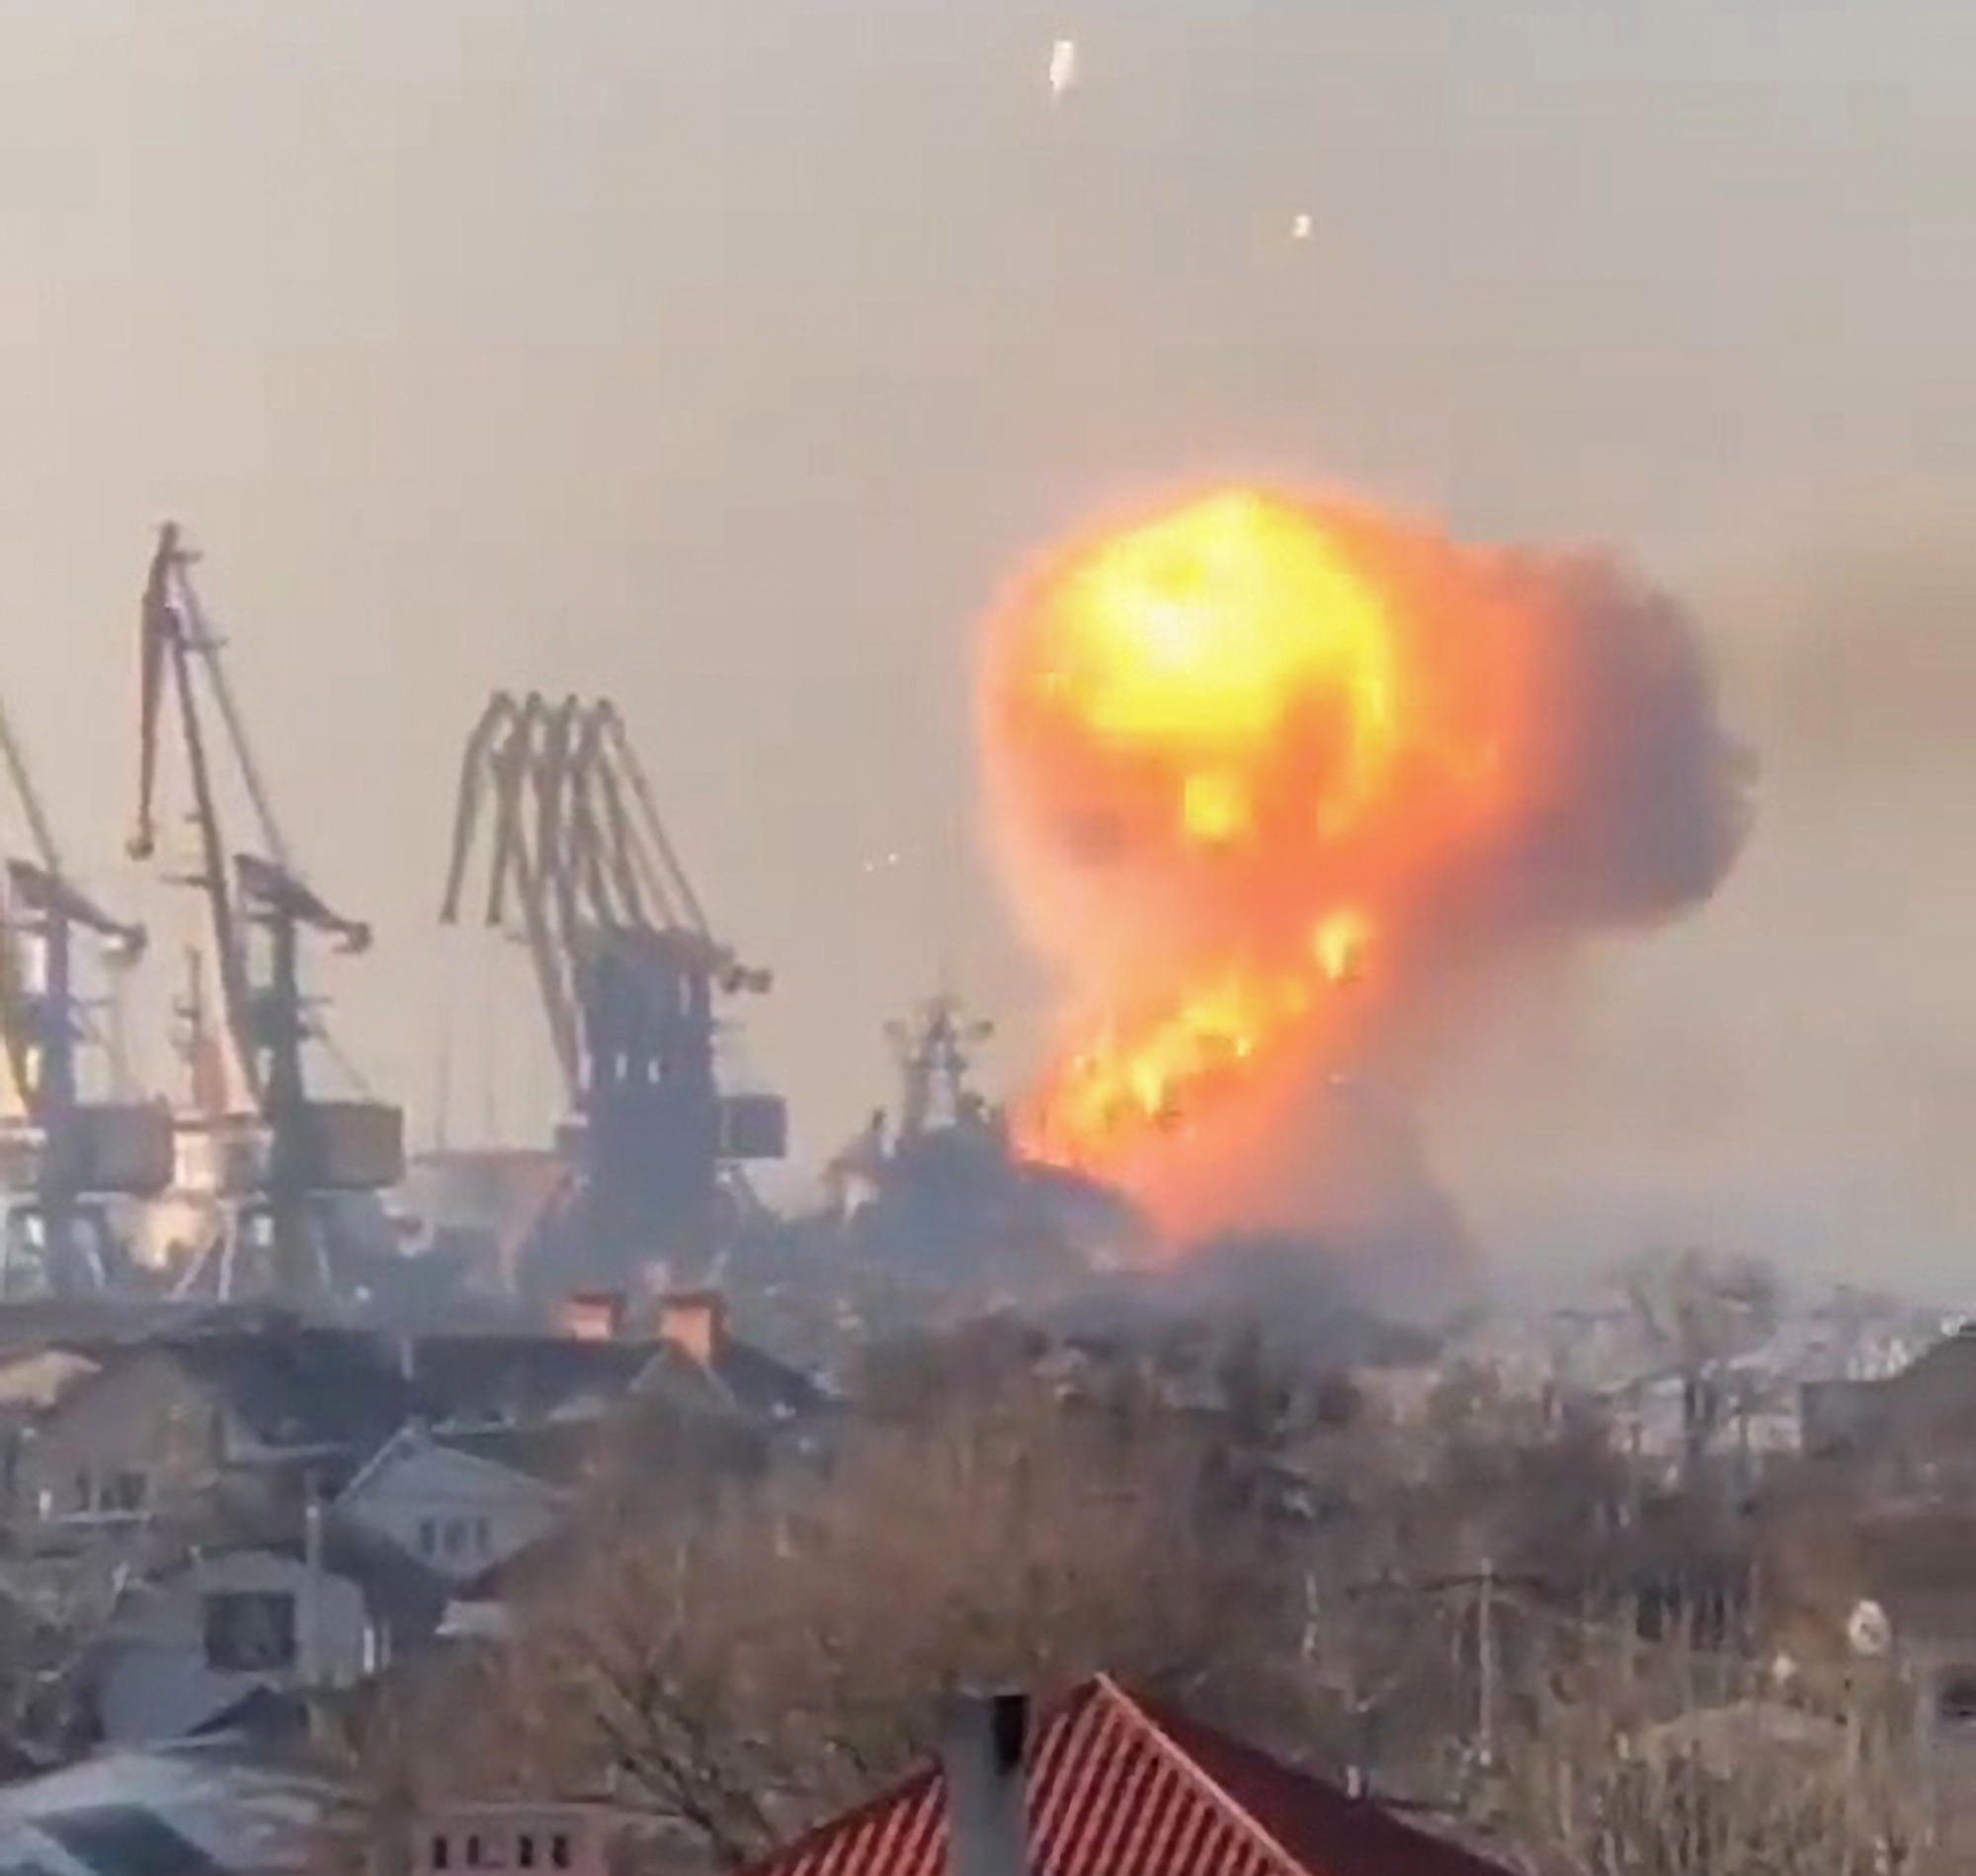 Hubo una explosión en el puerto en el video.